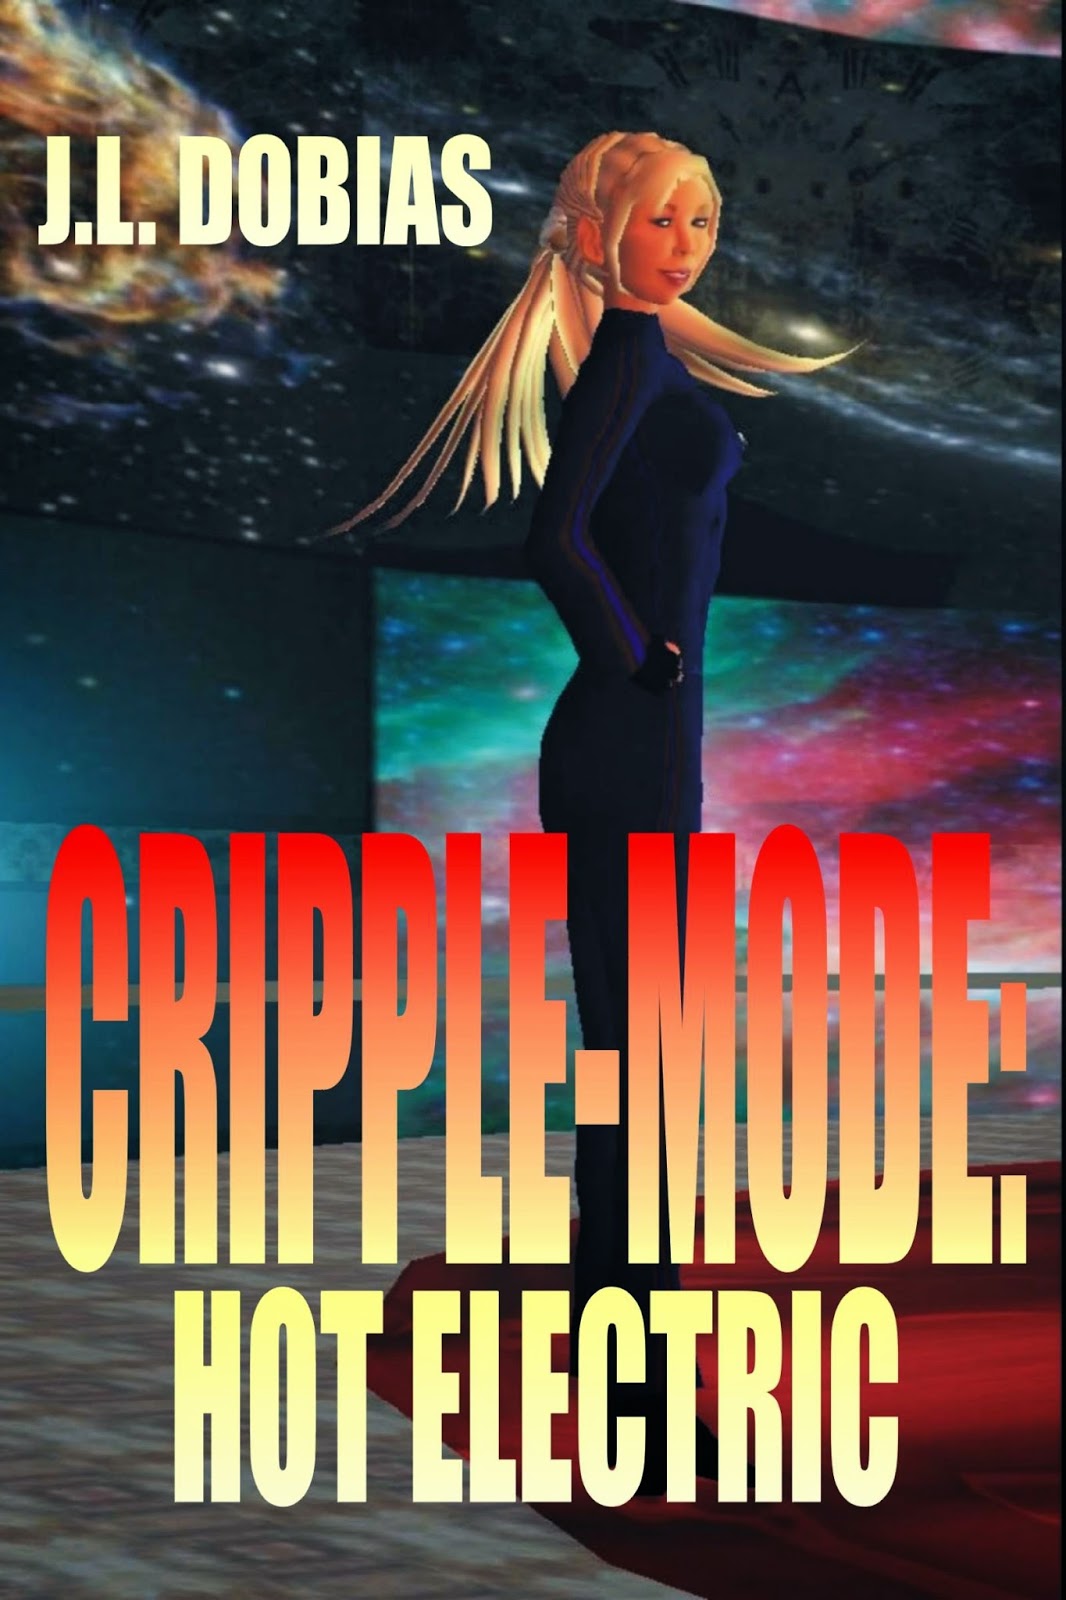 http://www.cripple-mode-series.com/